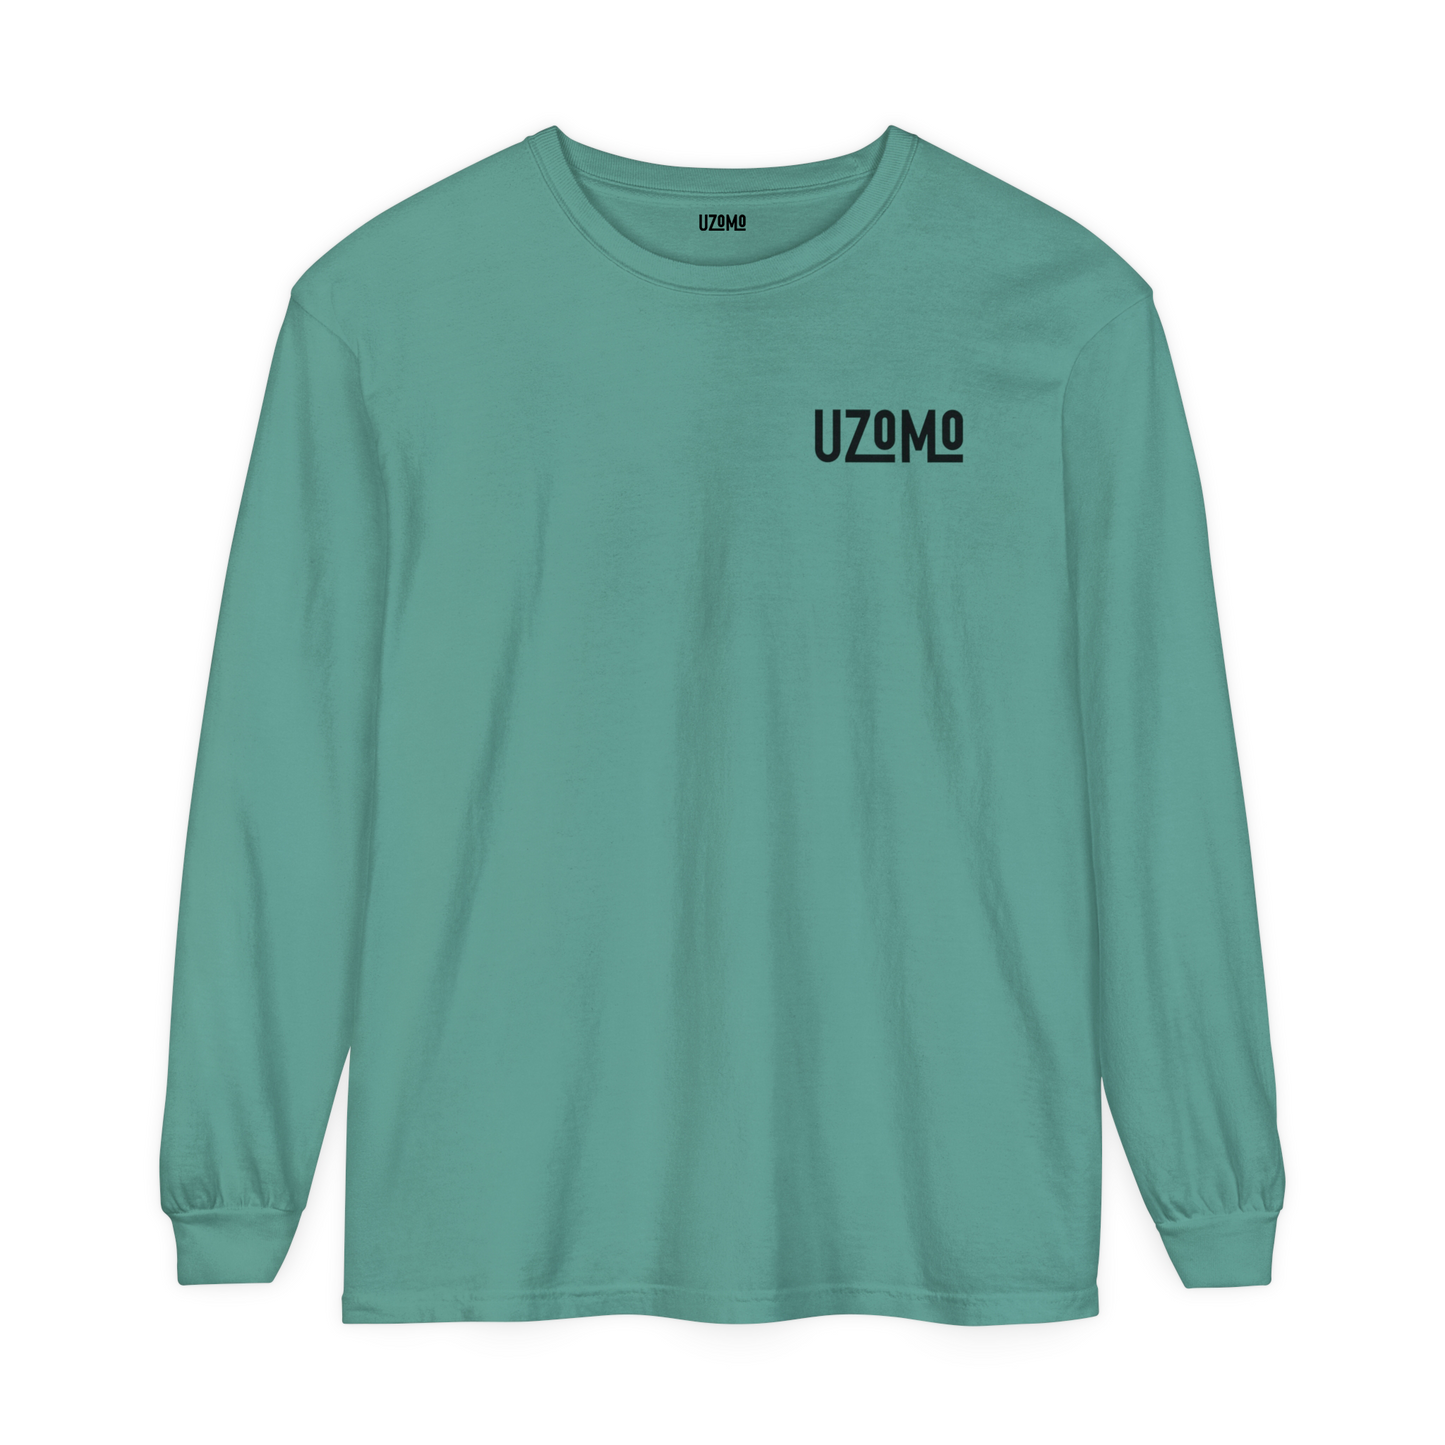 Mint long sleeve shirt with Logo in the left chest• მენთოლის ფერი გრძელმკლავიანი მაისური მარცხნივ ლოგოთი (UNISEX)